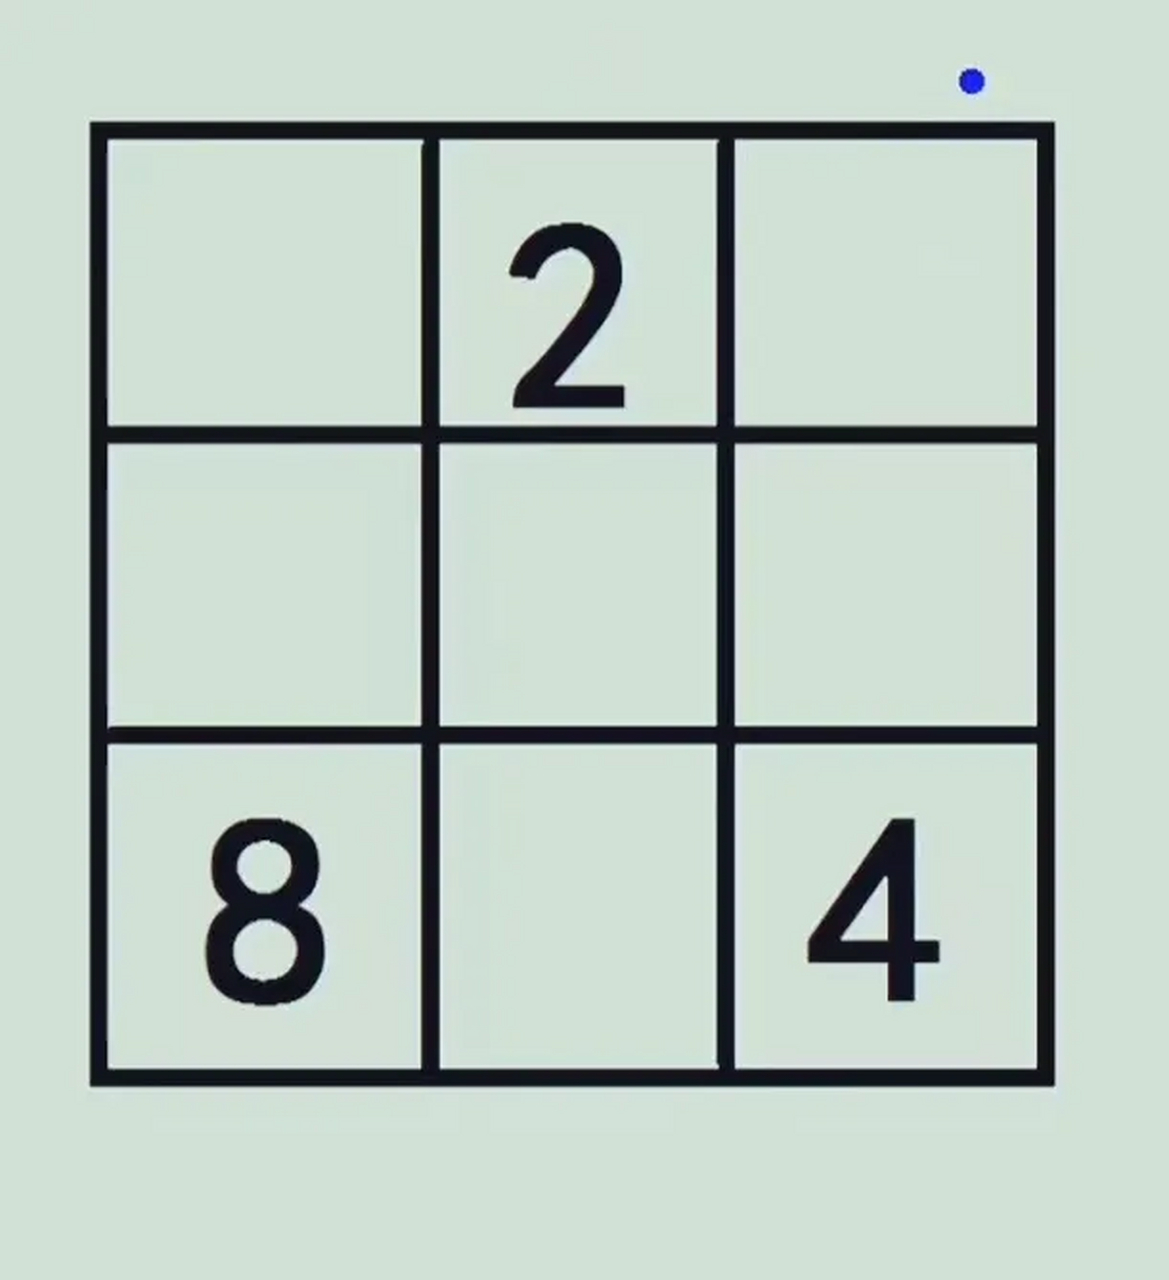 这是一个九宫格的题目,在空格里填上合适的数,使得每条直线上三个数的